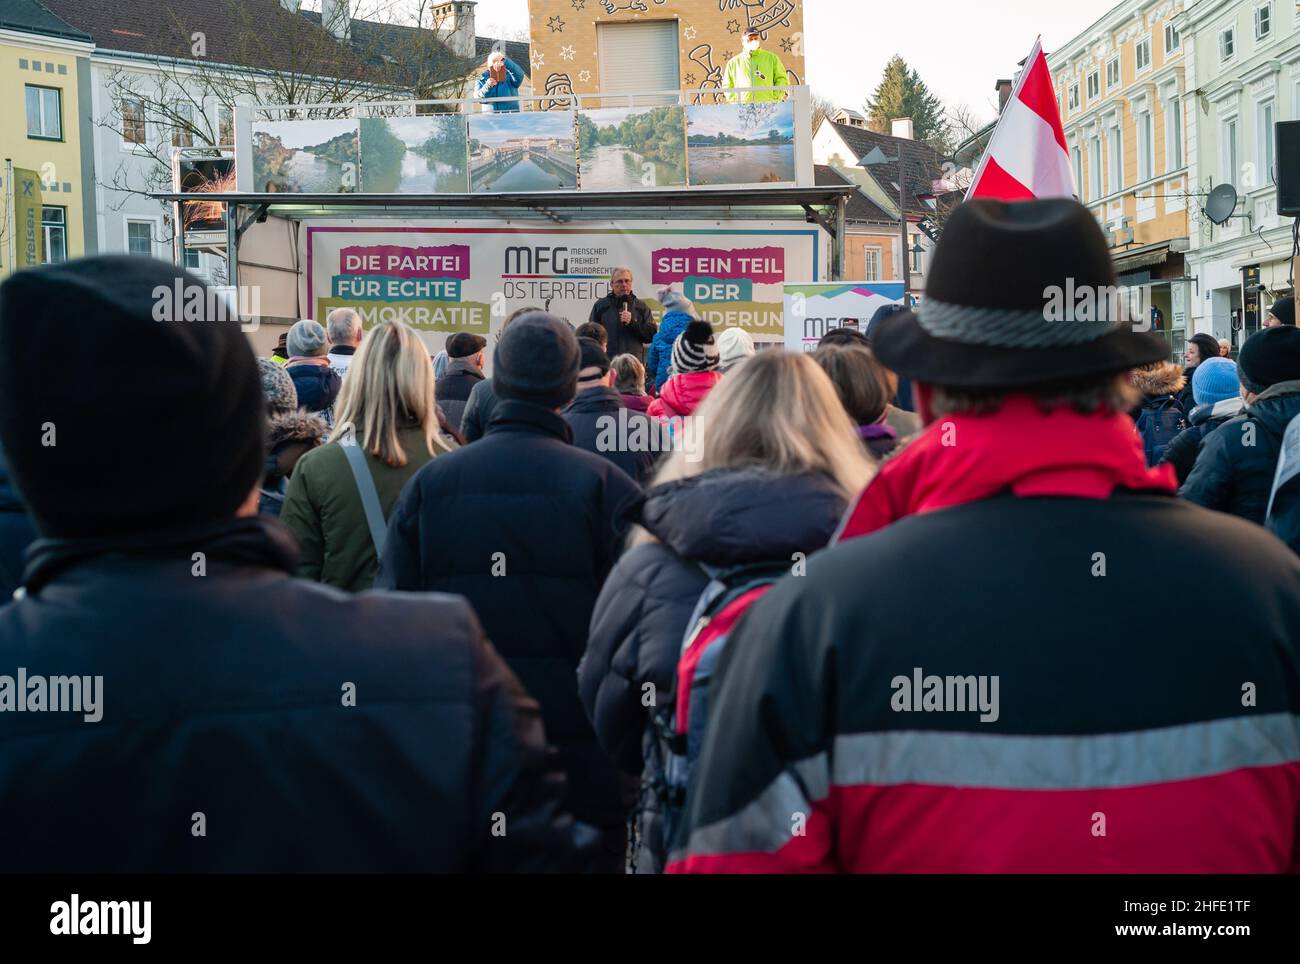 Amstetten, Österreich - Januar 15 2022: Demonstration oder Protest der MFG Menschen Freiheit Grundrechte Partei gegen die vorgeschriebene Covid-19-Impfung Stockfoto